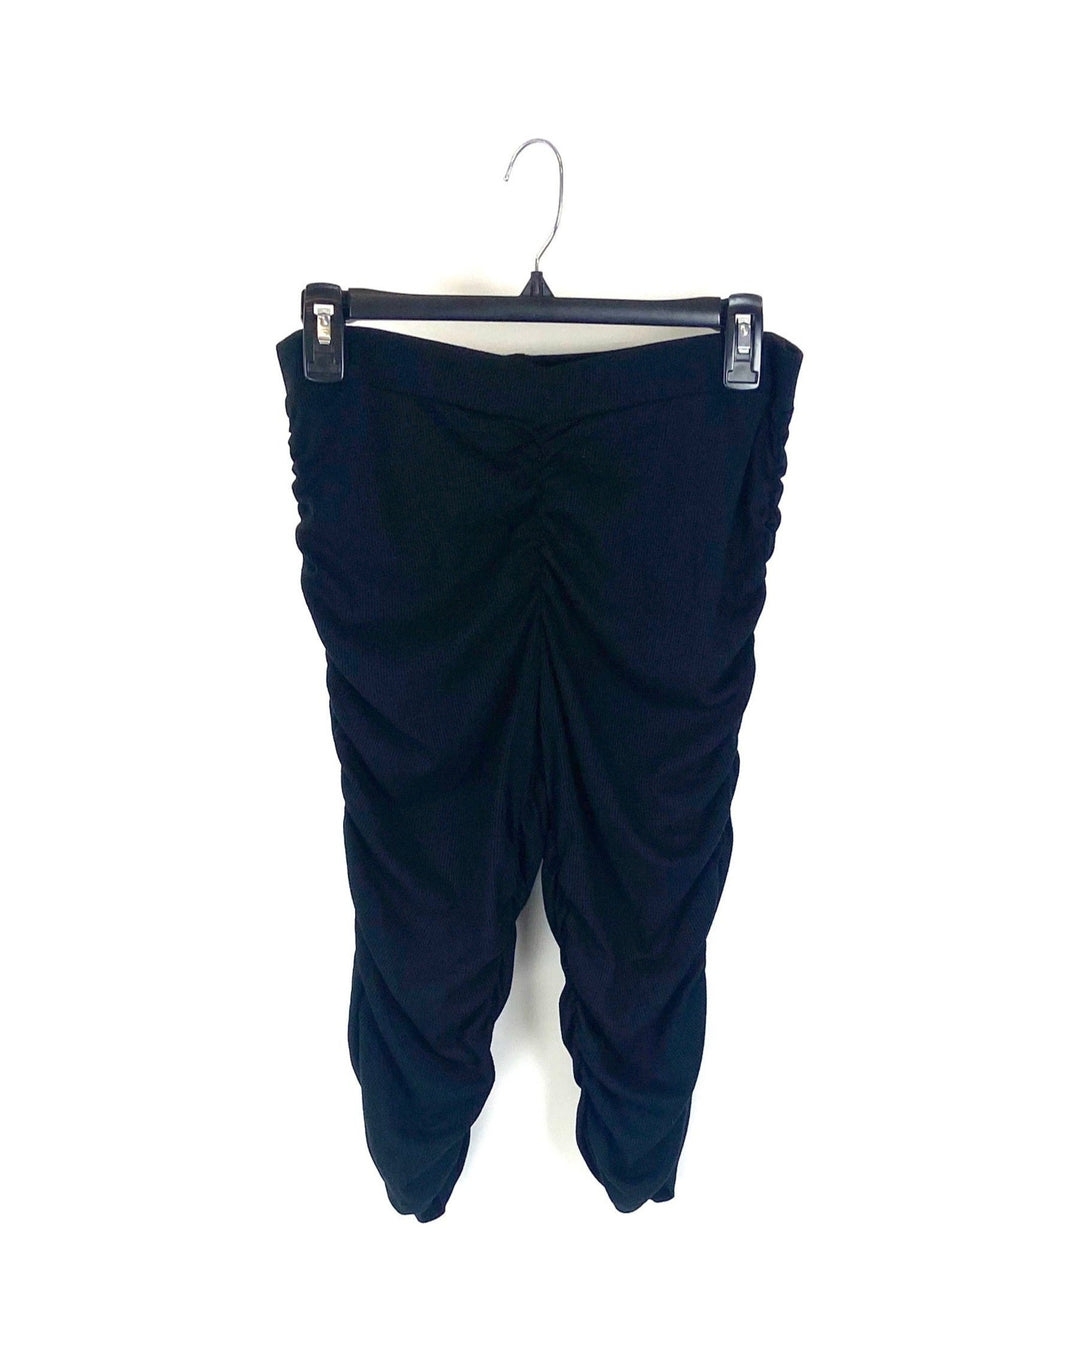 Black Scrunched Biker Shorts - Medium, Large